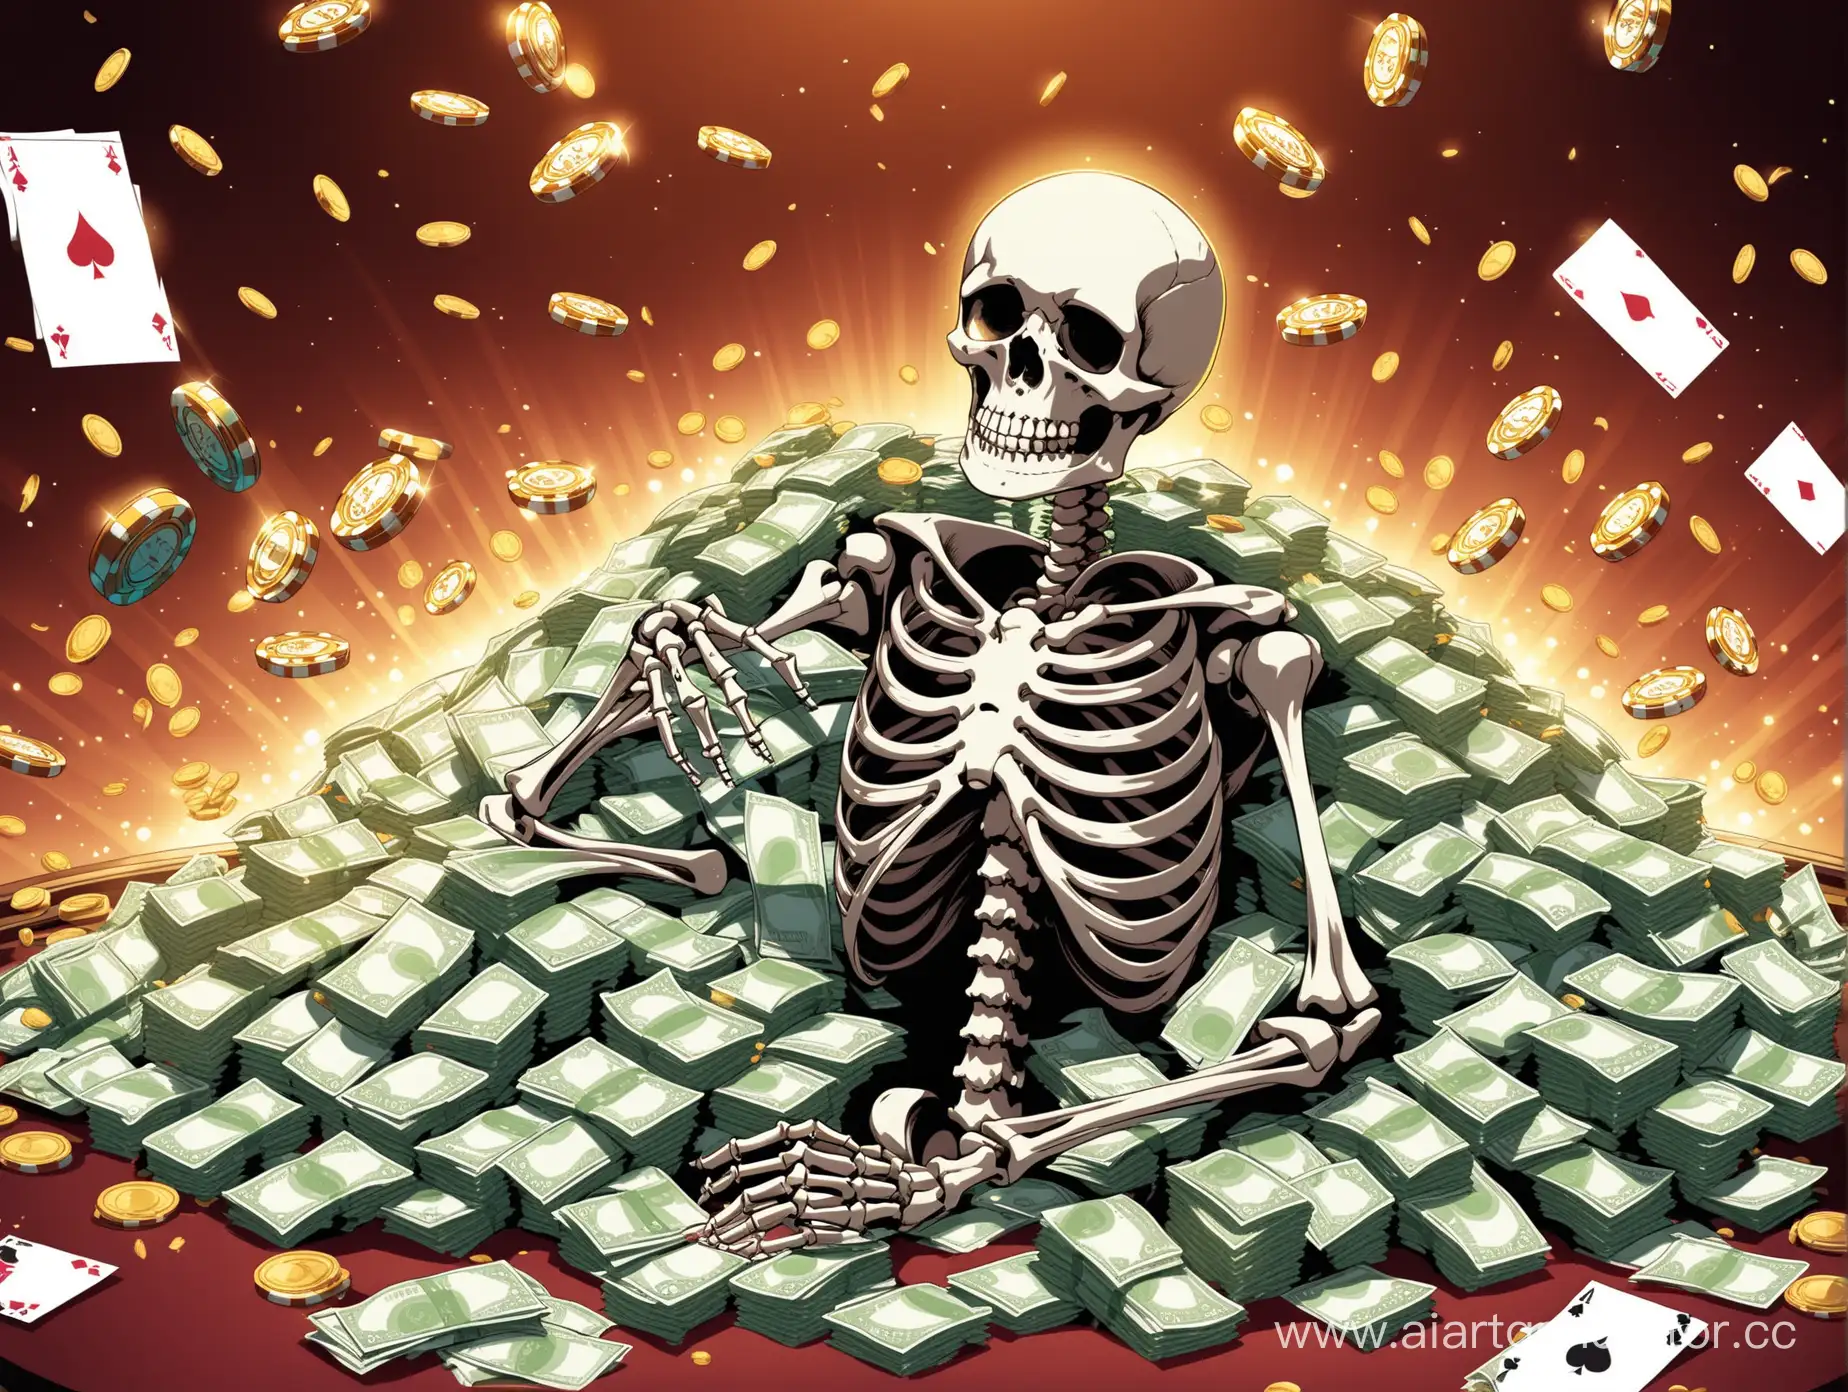 скелет с кучей денег играет в казино

